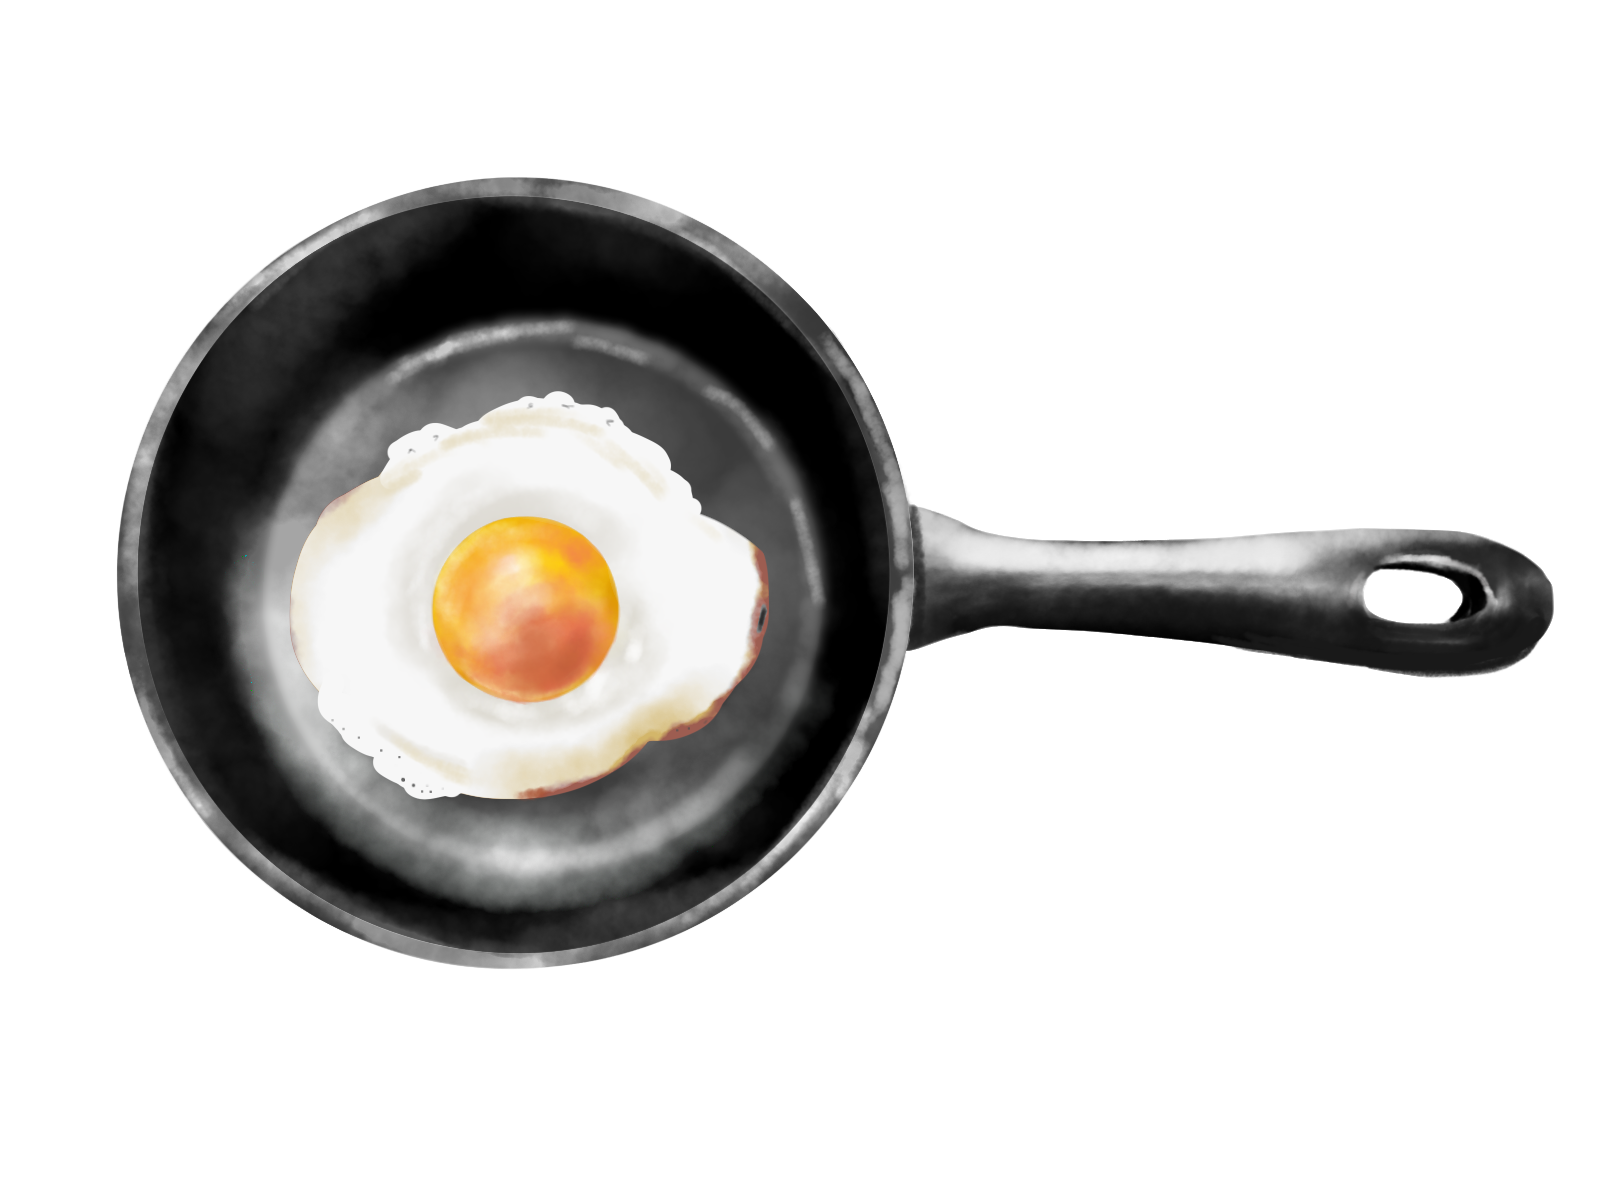 Baked Egg（十分に焼き固めた卵）の陽性予測には、どのような検査が最も有用か？